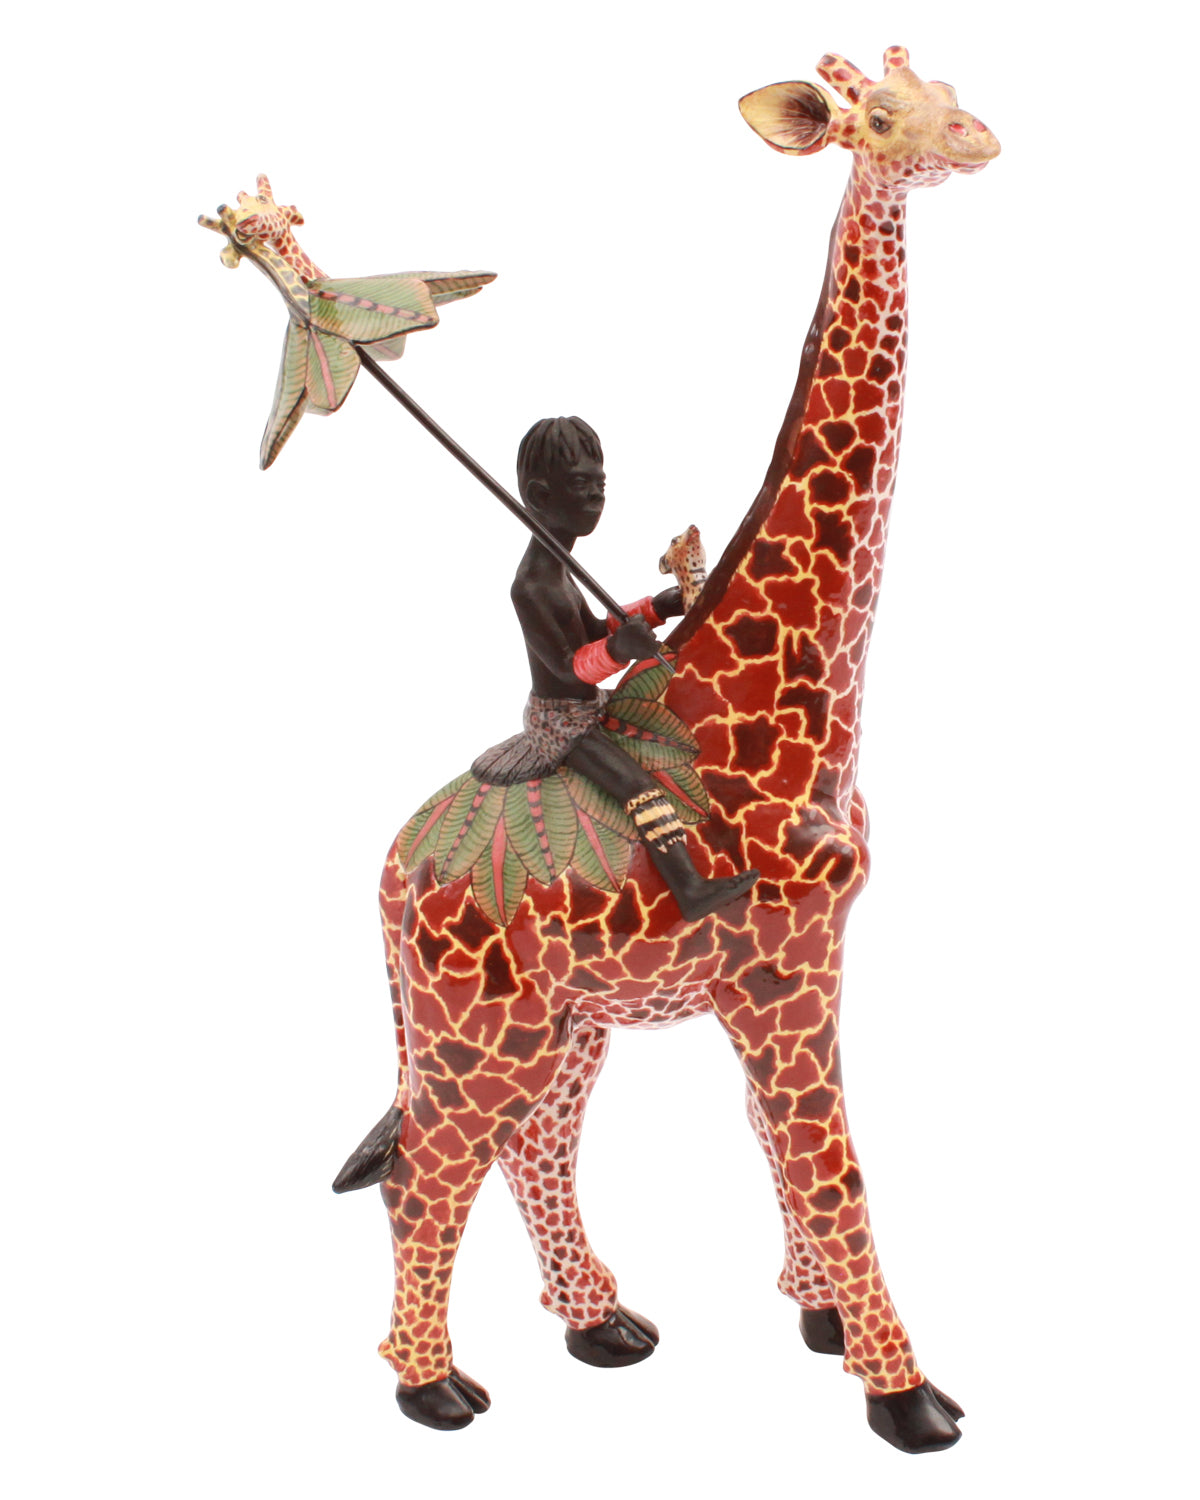 Giraffe Rider